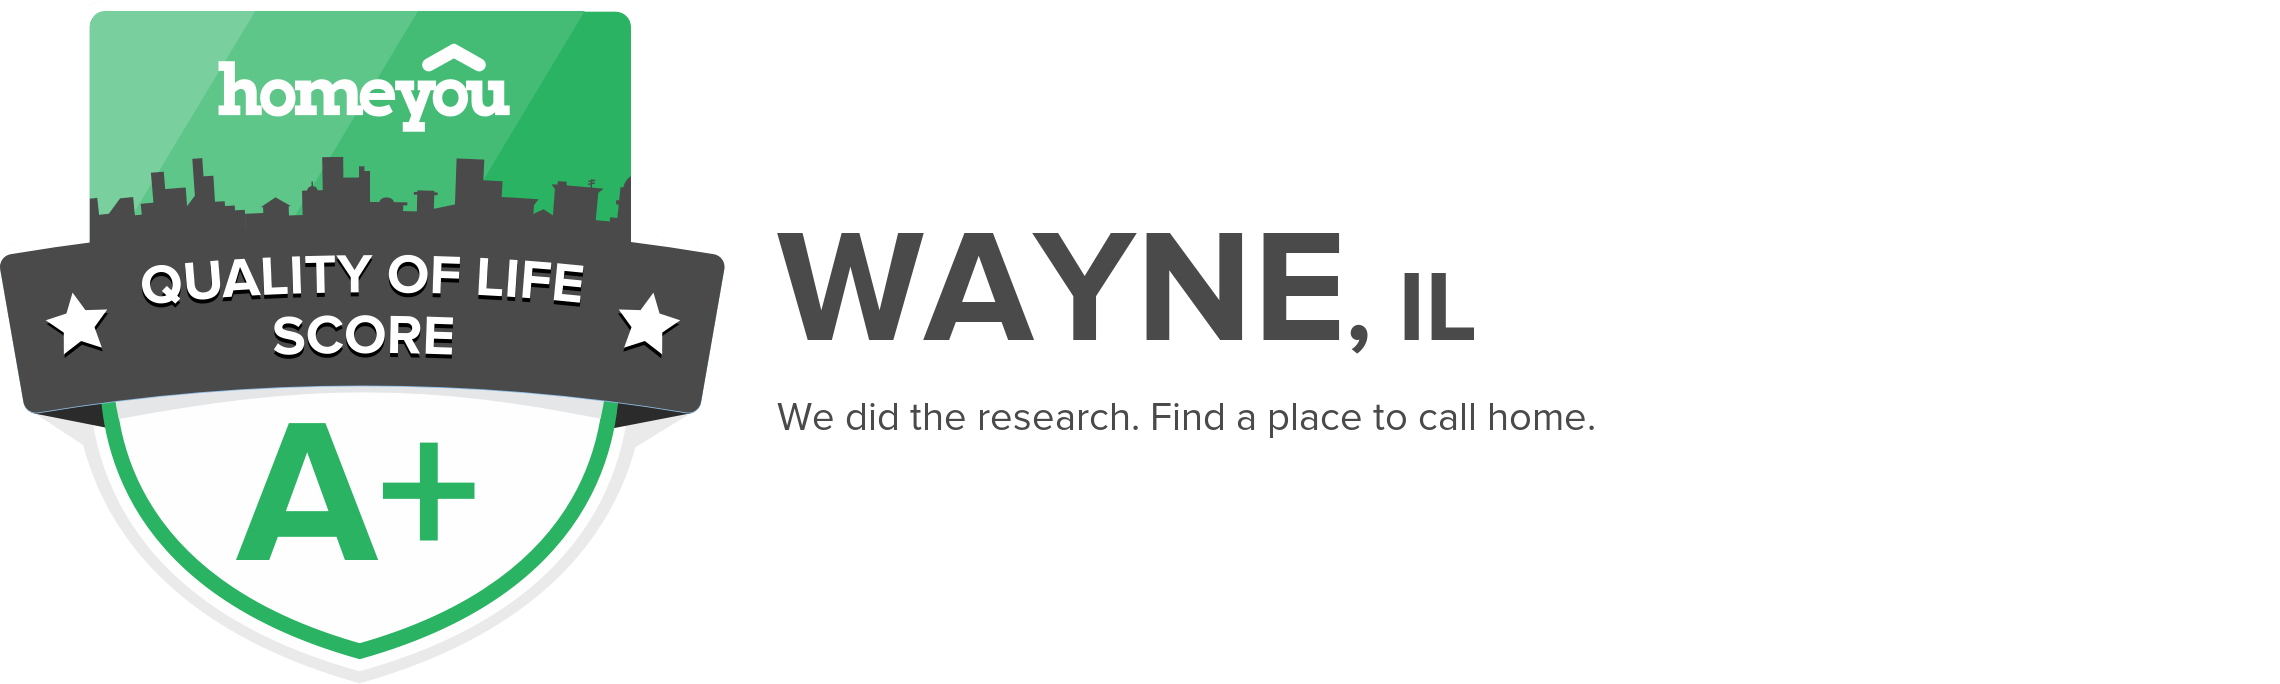 Wayne, IL